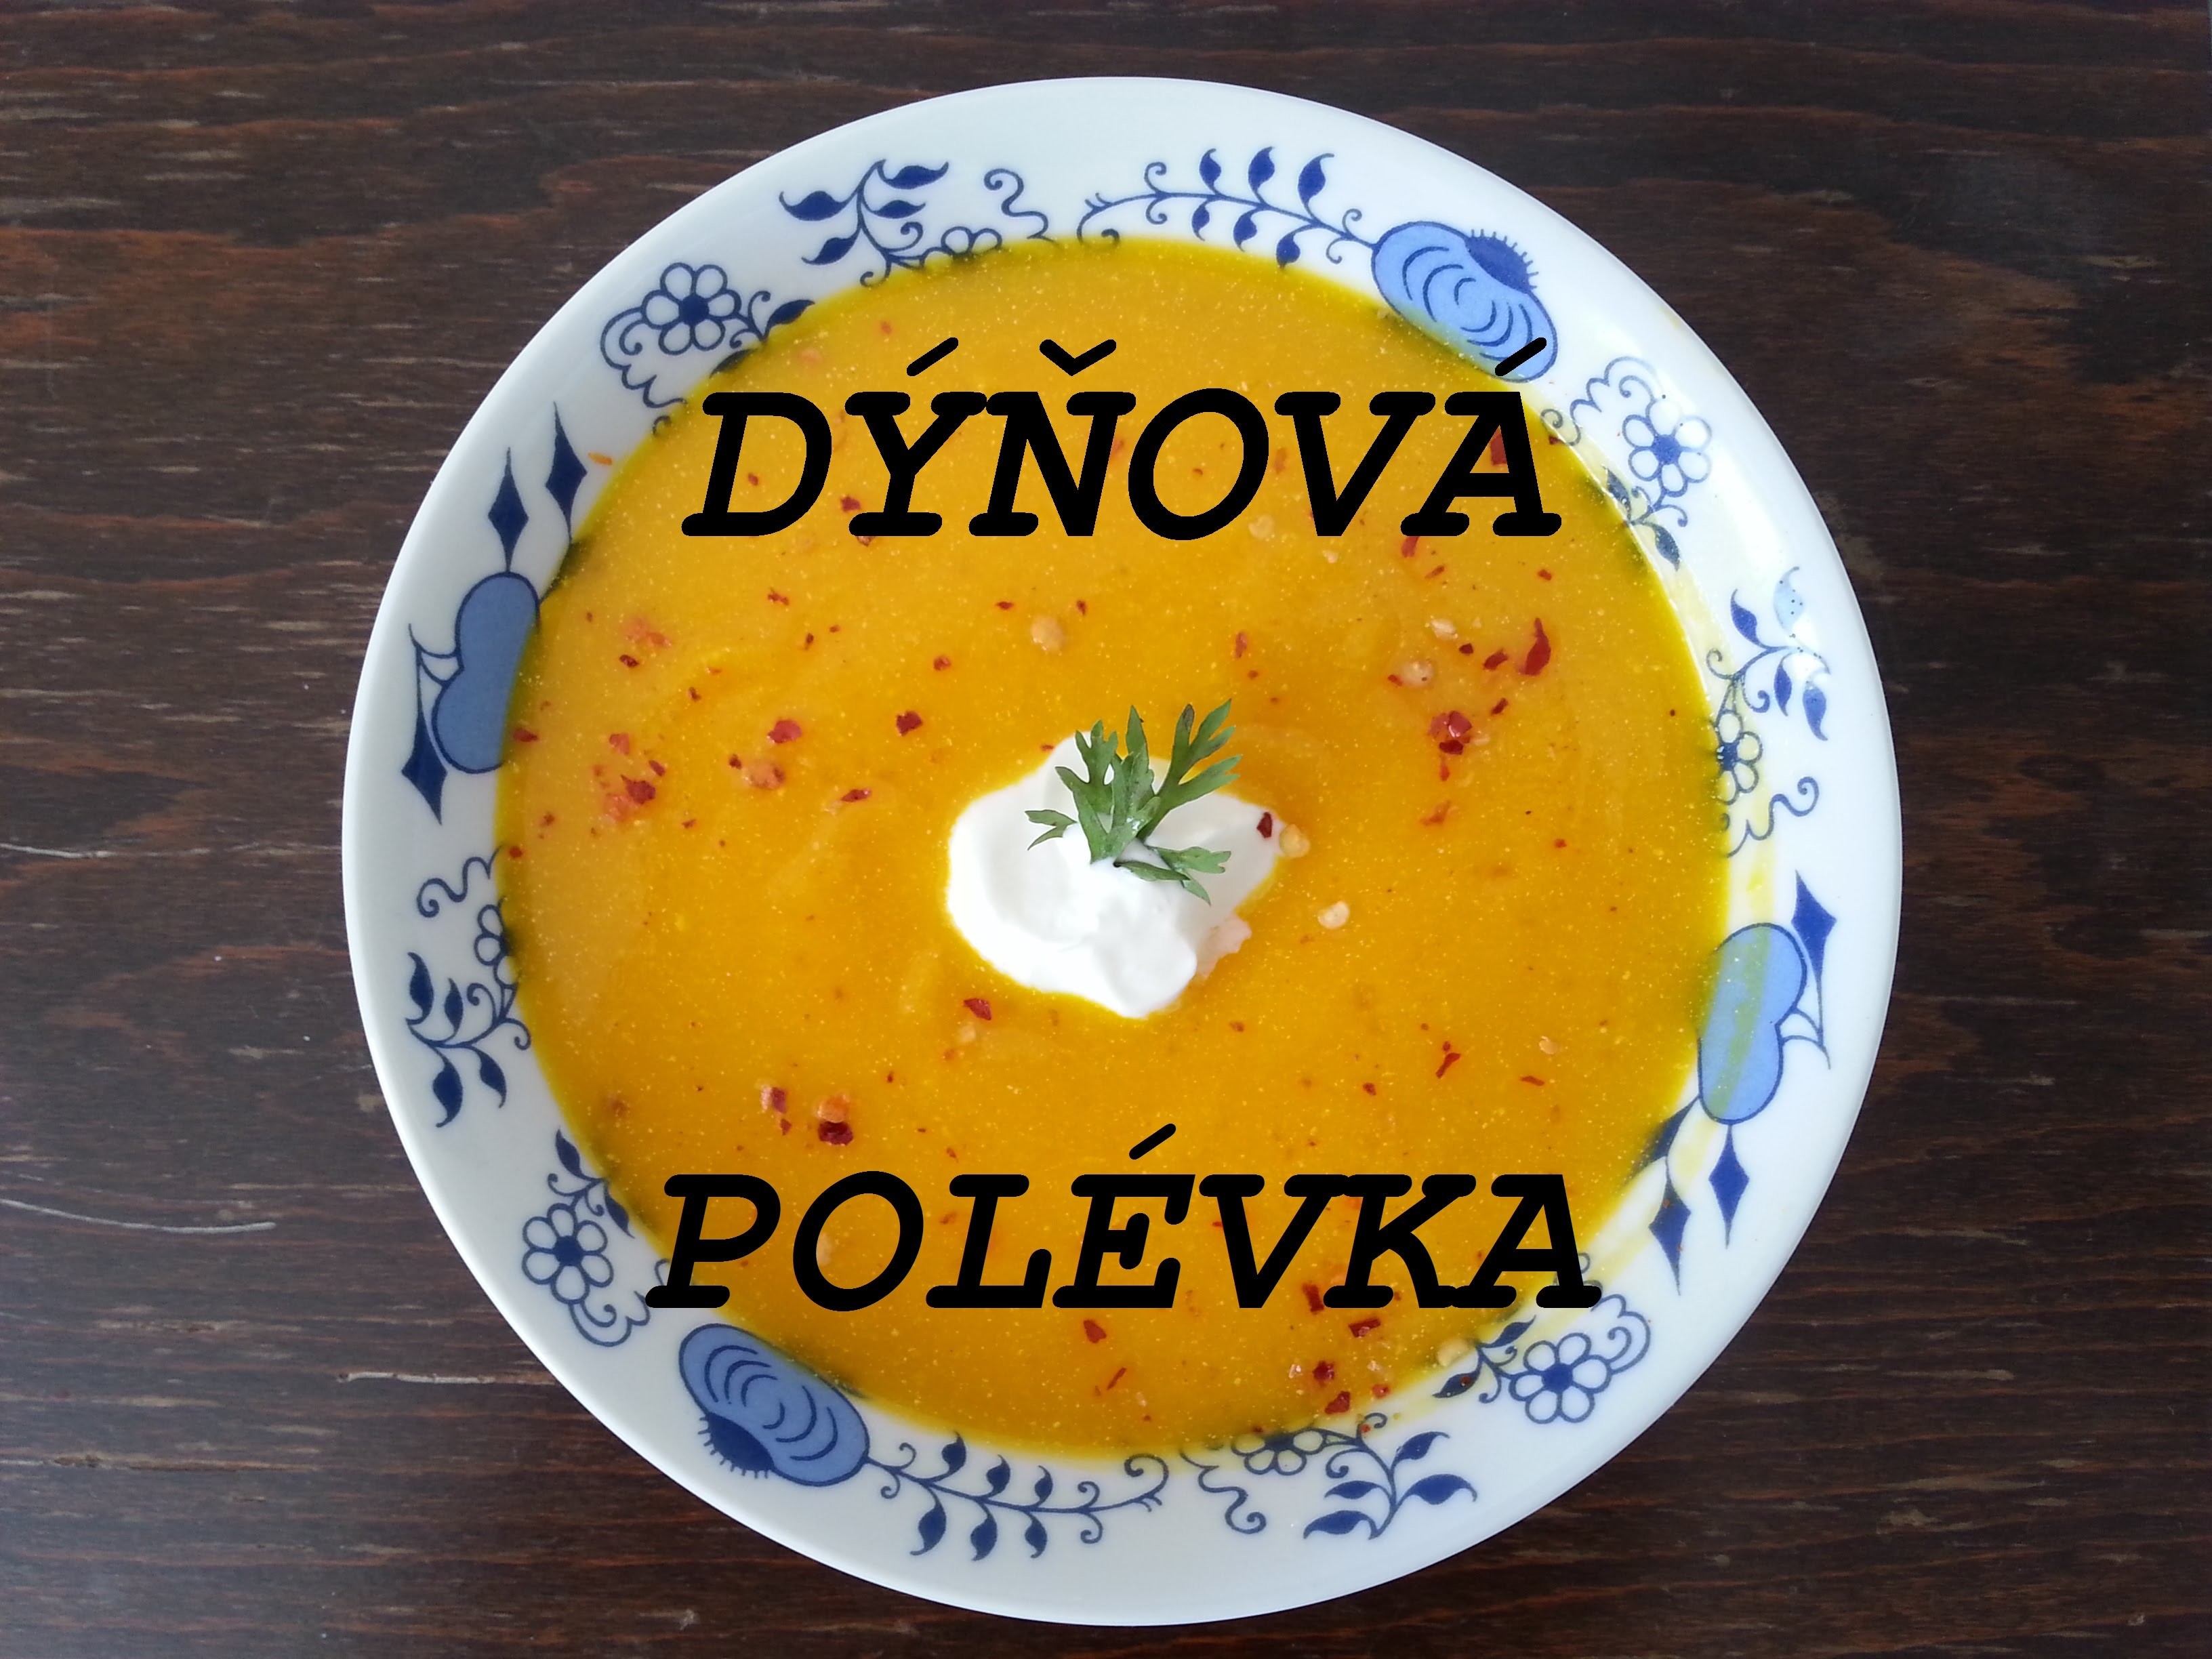 DIY Dýňová polévka. easy pumpkin soup (ideal for Halloween)